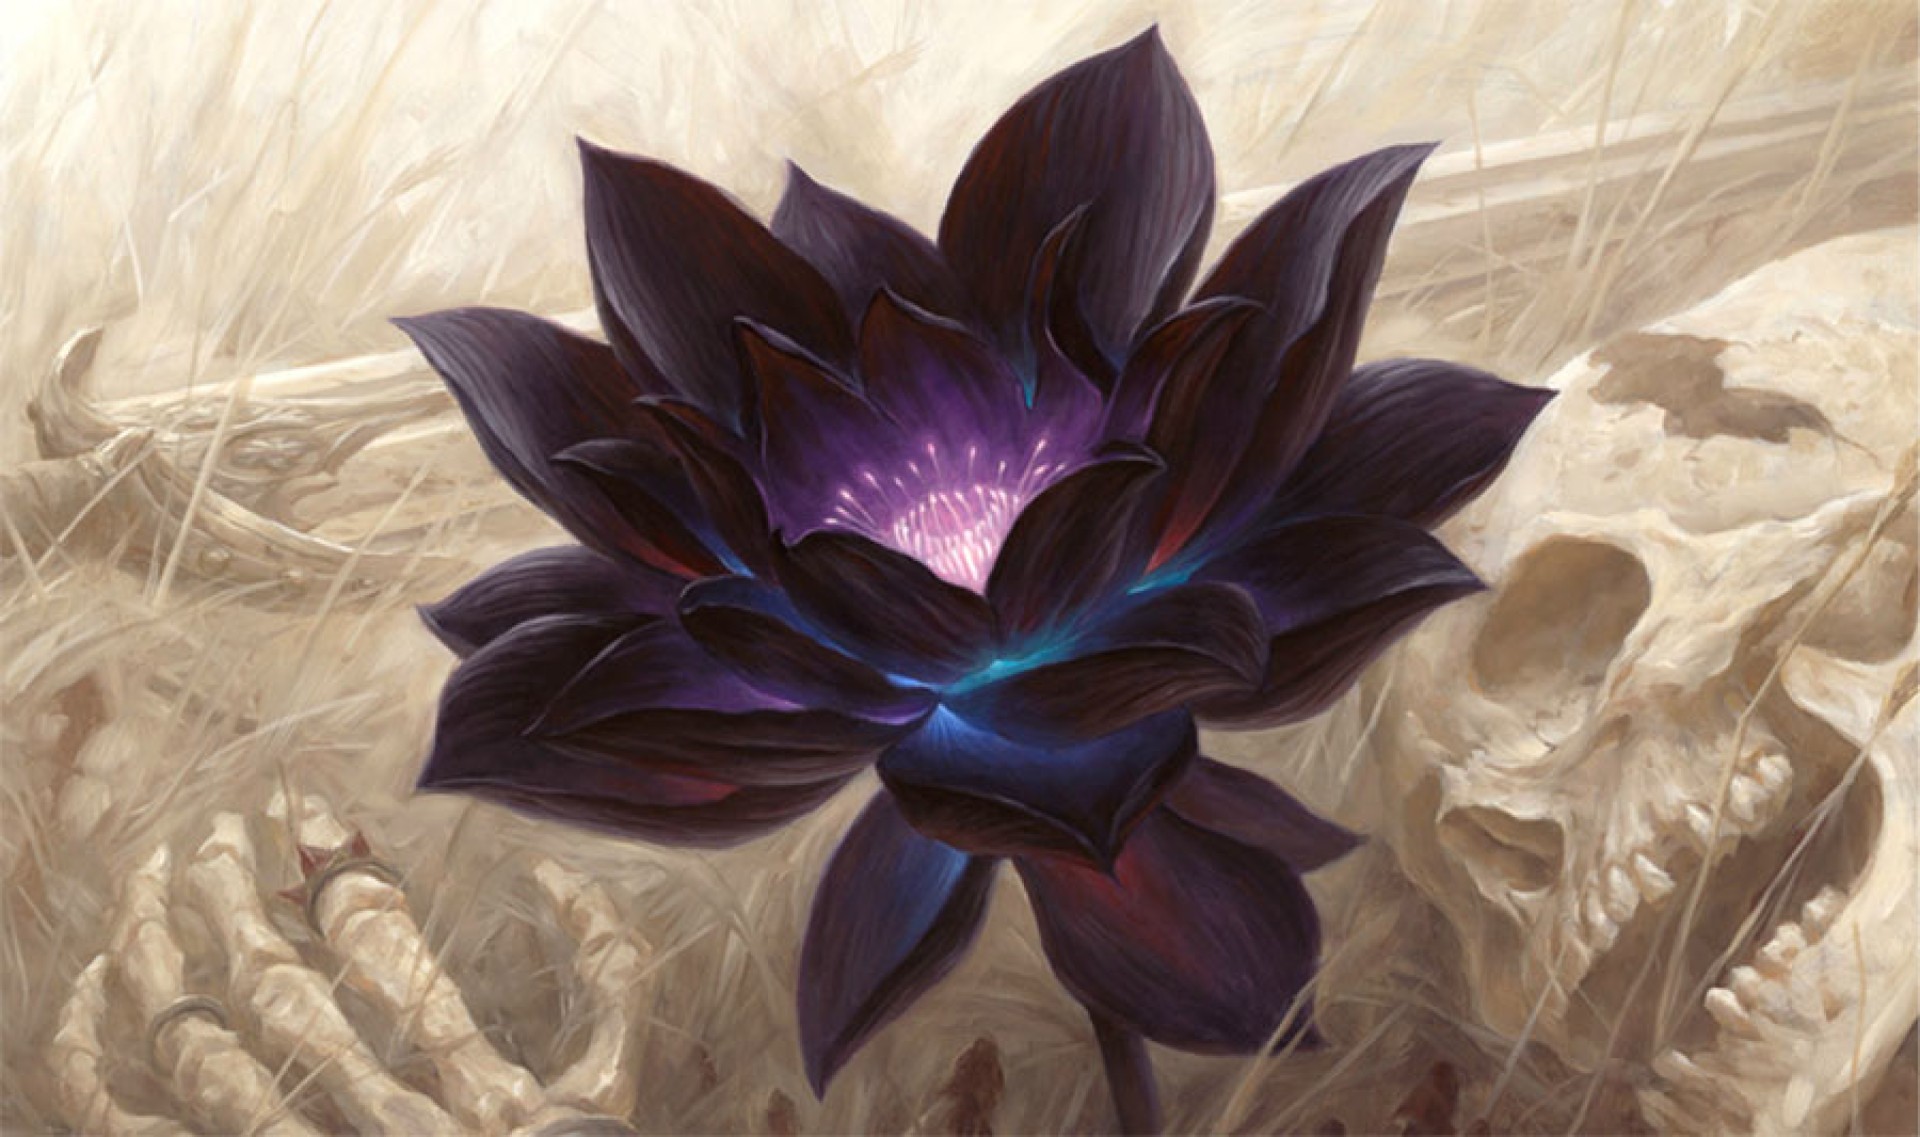 การ์ด Black Lotus ของ Magic: The Gathering ทำสถิติใหม่ จบประมูลด้วยมูลค่า 21 ล้านบาท